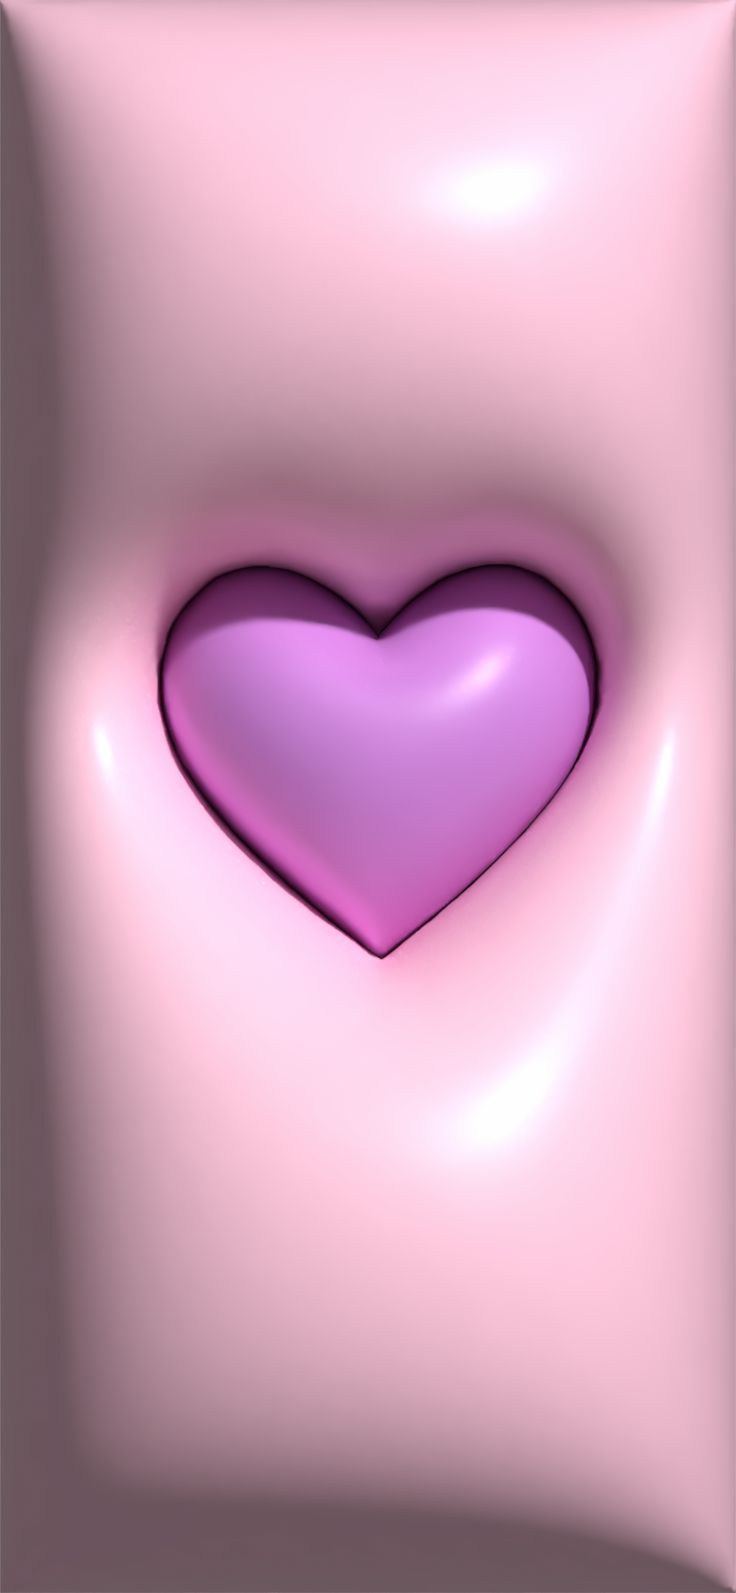 Heart 3D wallpaper. Pinky wallpaper, Slime wallpaper, Pink wallpaper iphone